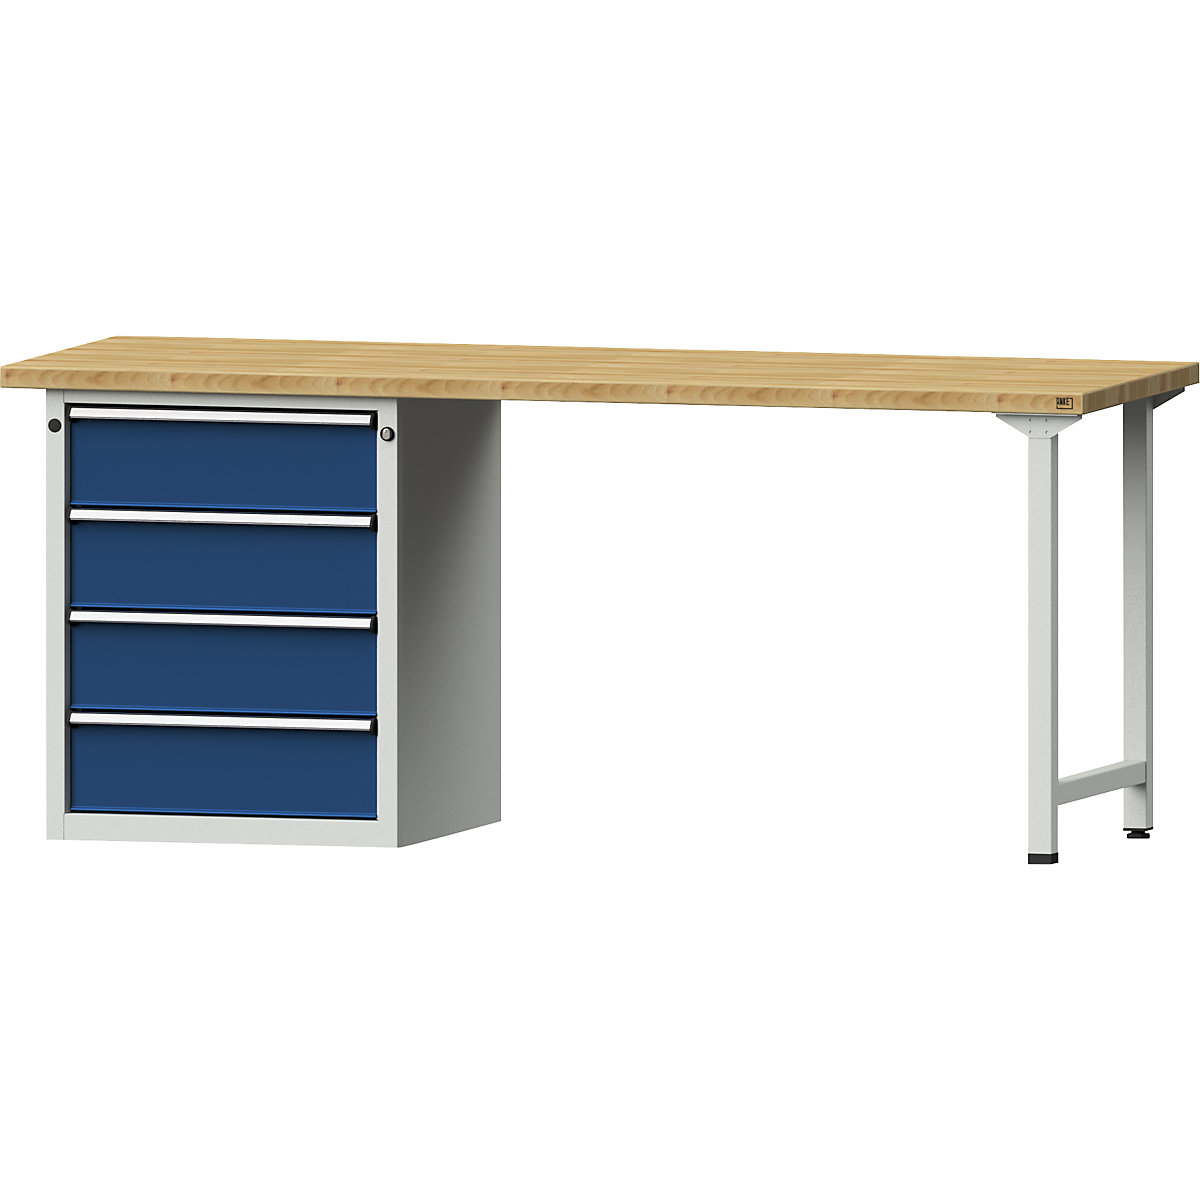 Dílenský stůl s rámovou konstrukcí – ANKE, 4 zásuvky, deska z bukového masivu, šířka 2000 mm